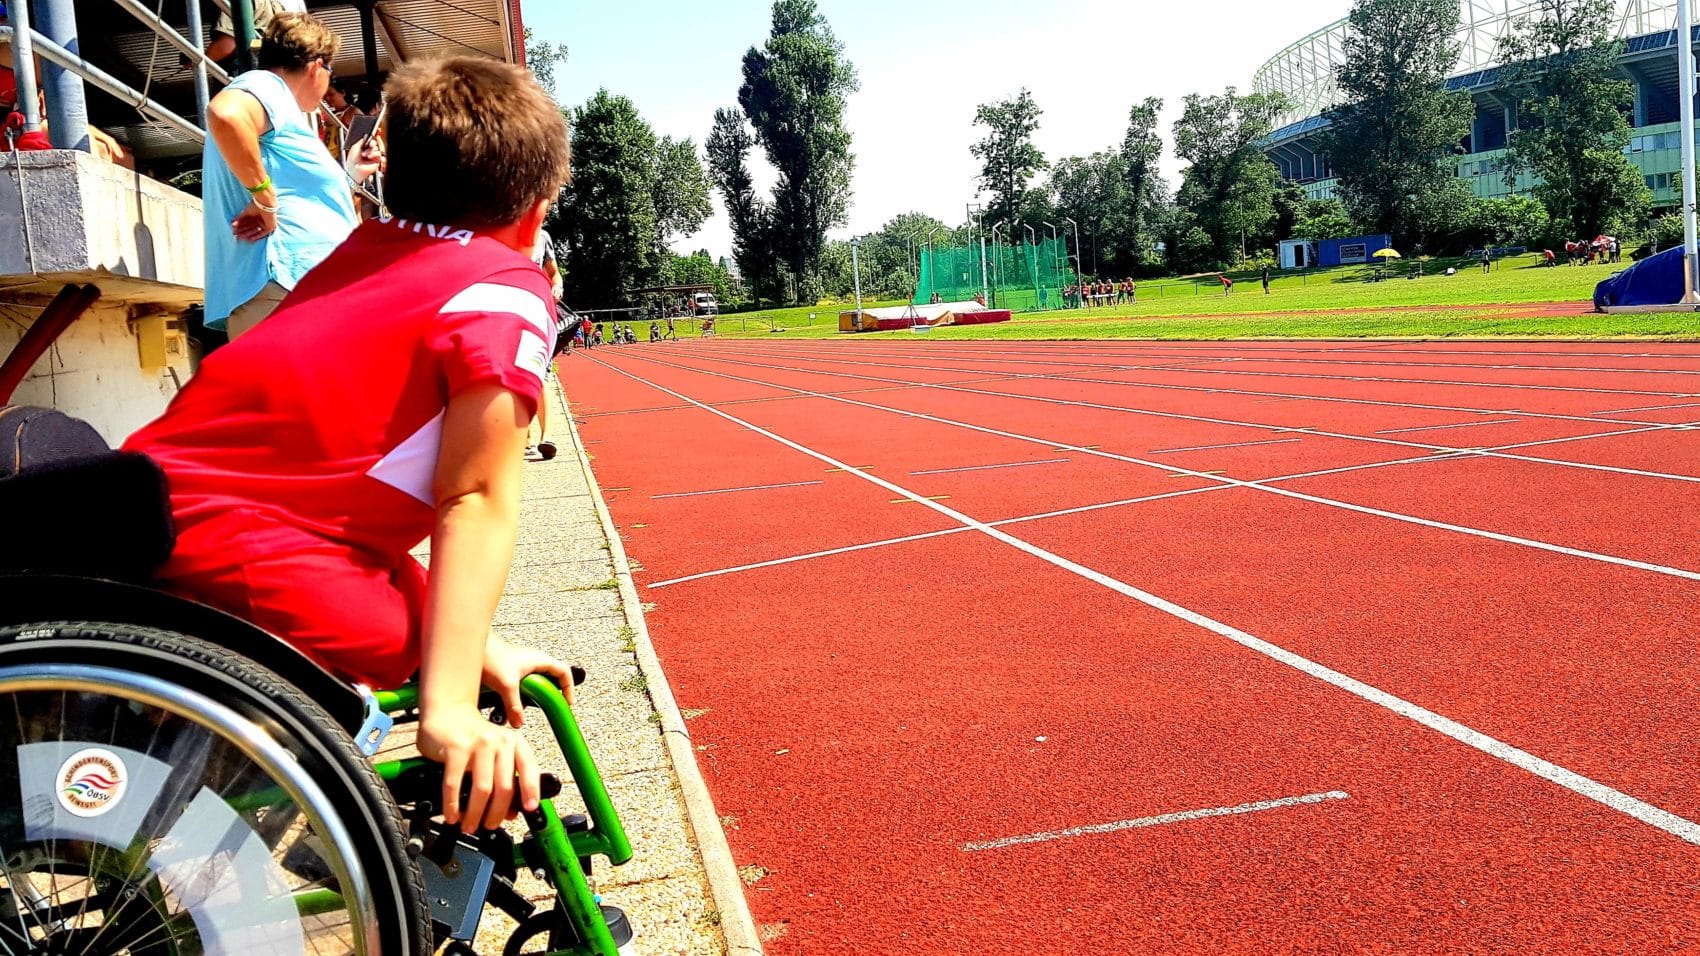 Der Sommersporttag soll den Behindertensport fördern und Spaß an Bewegung bringen.